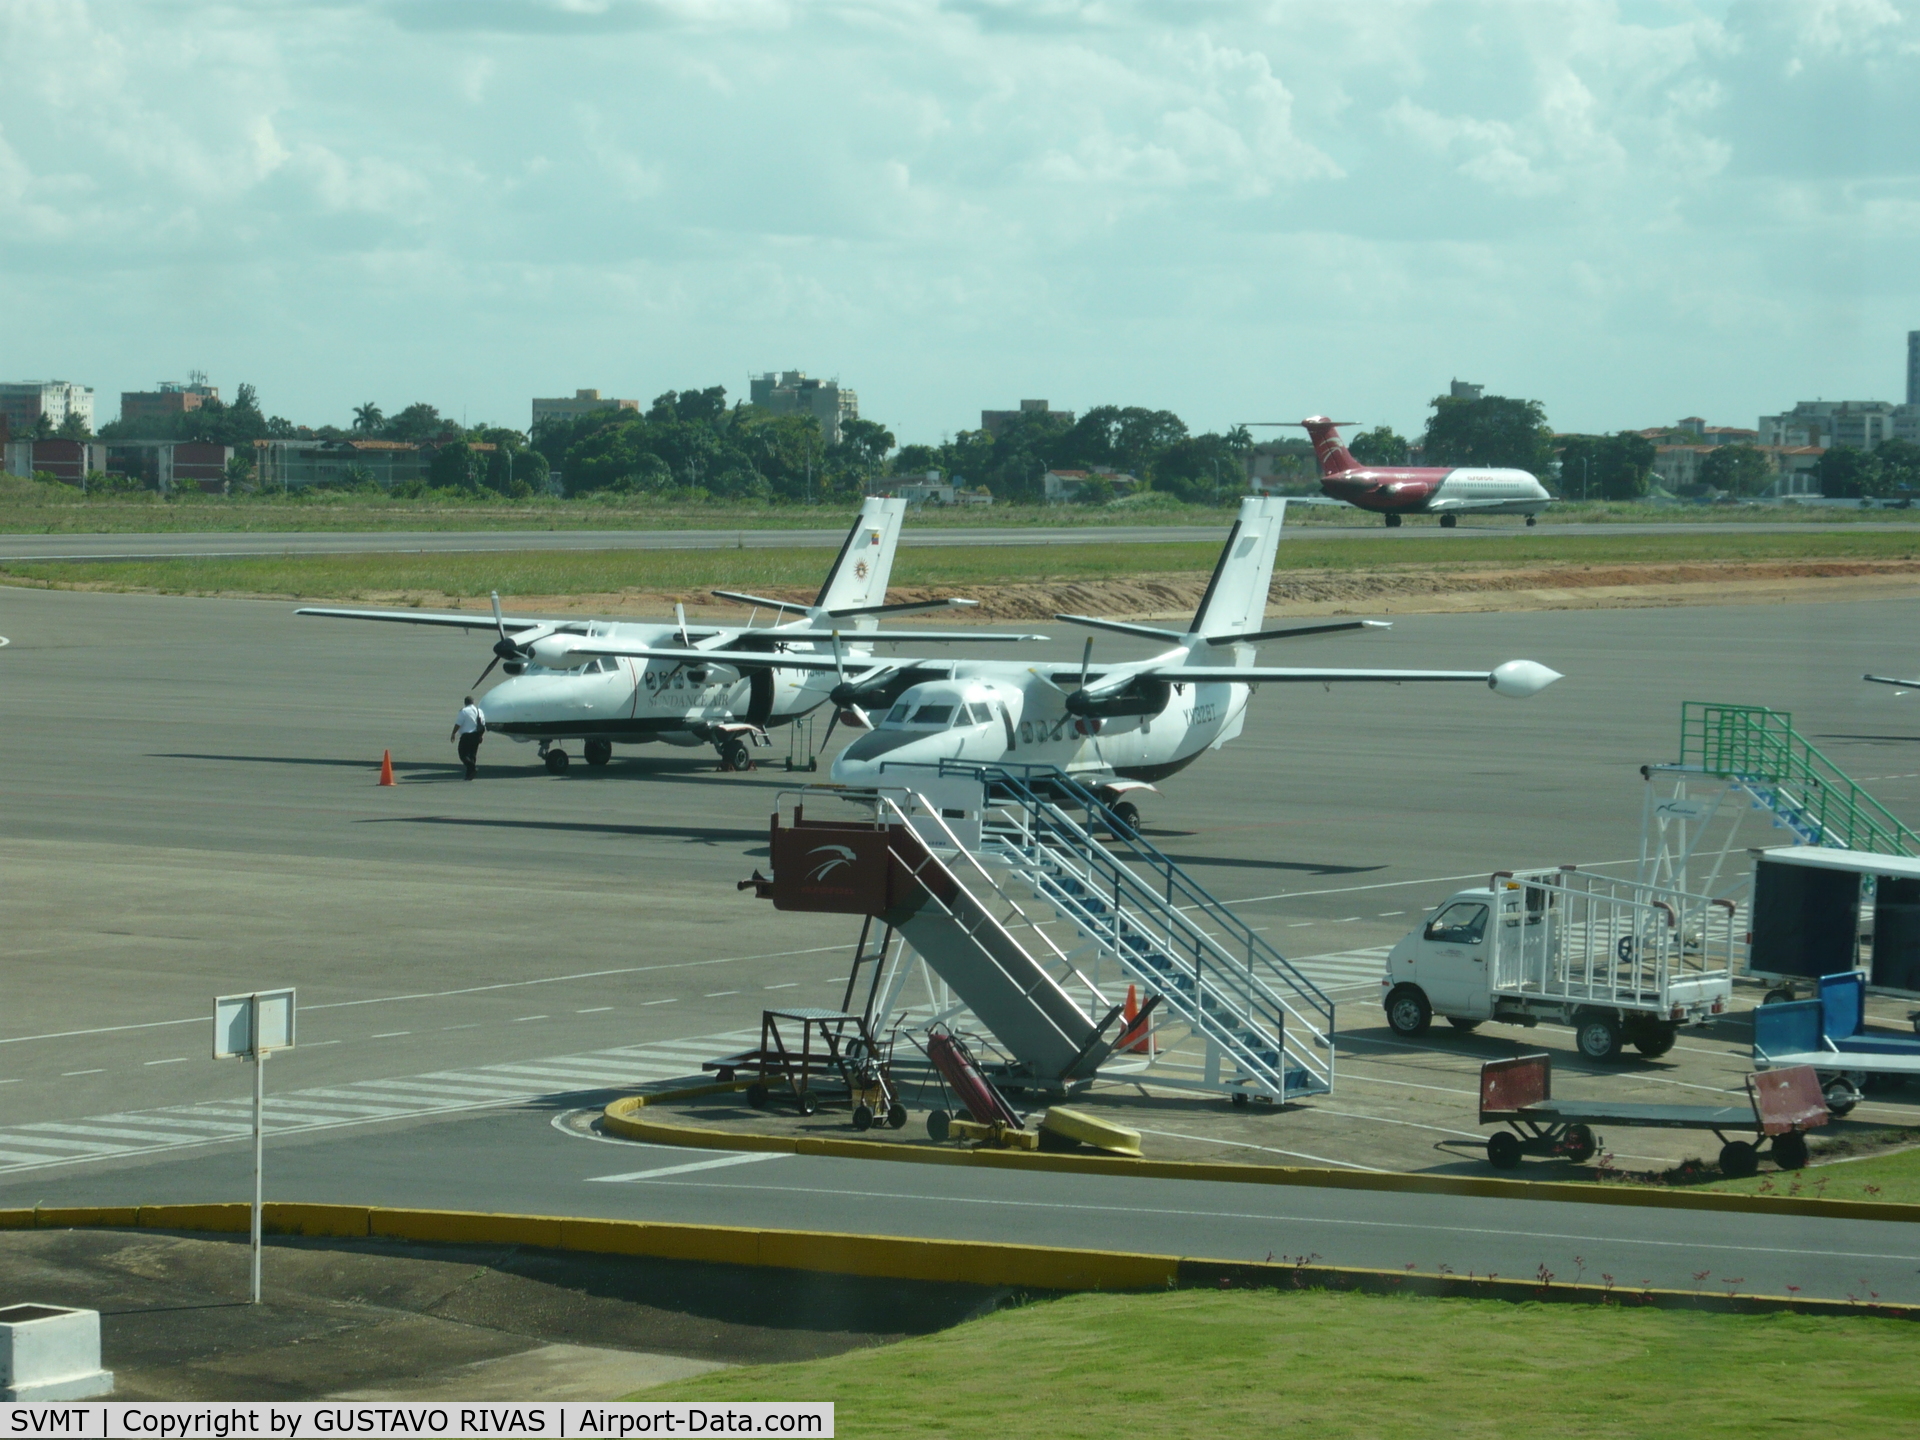 Maturín Airport, Maturín, Monagas Venezuela (SVMT) - RAMP